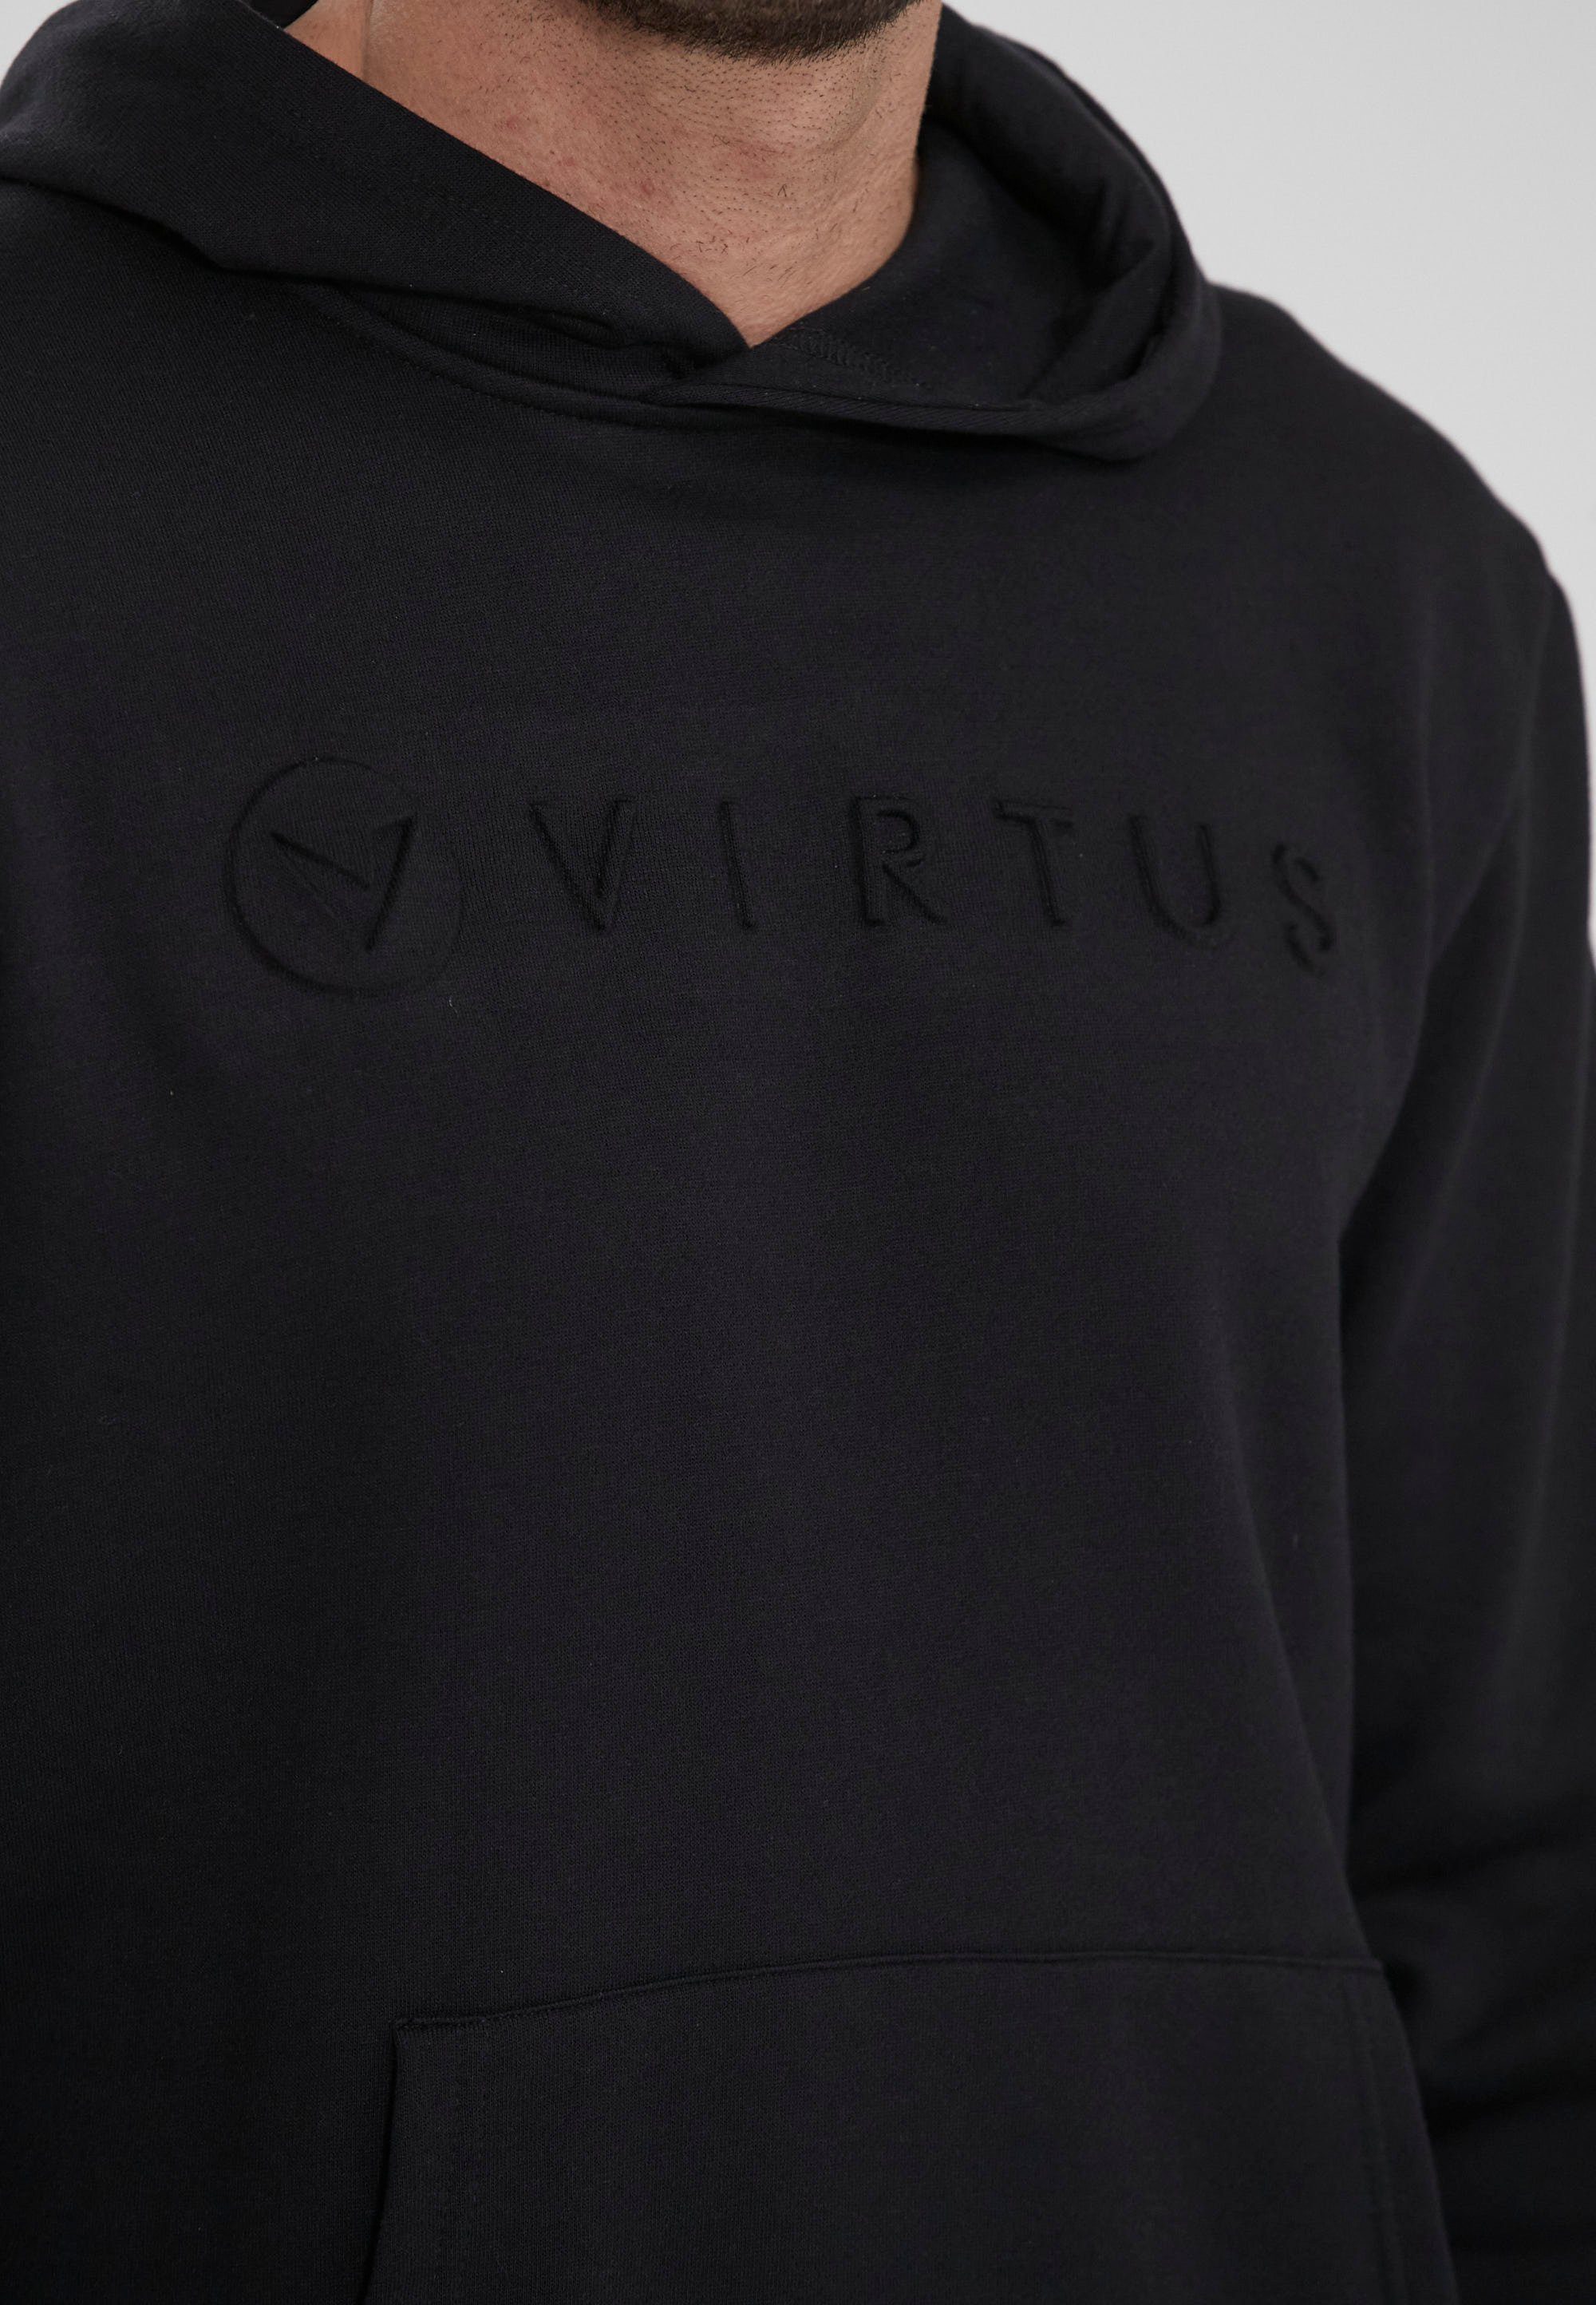 Kapuzensweatshirt schwarz Virtus Baumwoll-Touch Toluo mit